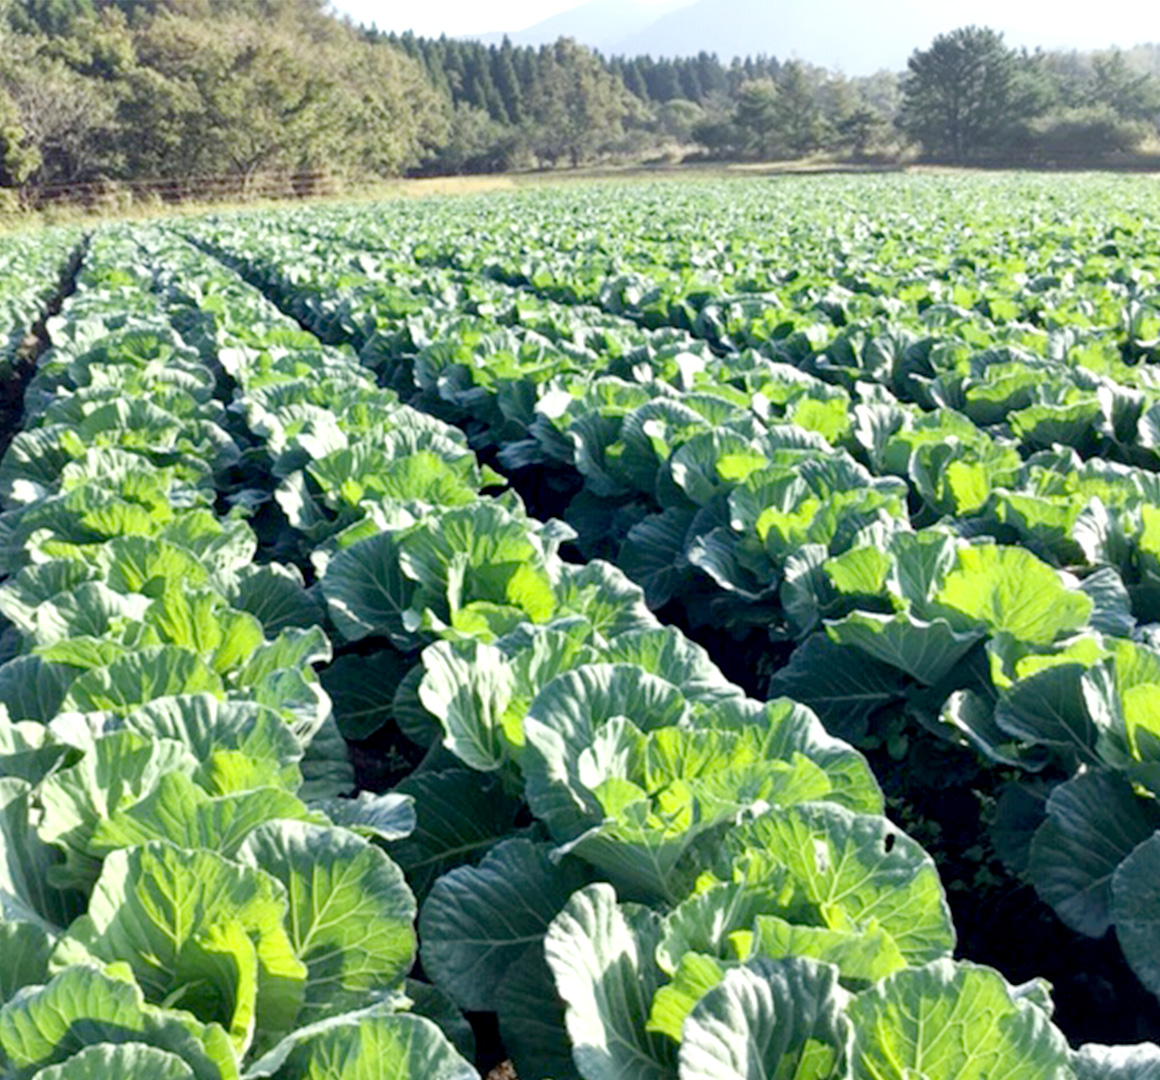 キャベツの安定的な生産が可能な「飯田高原」に農場を所有